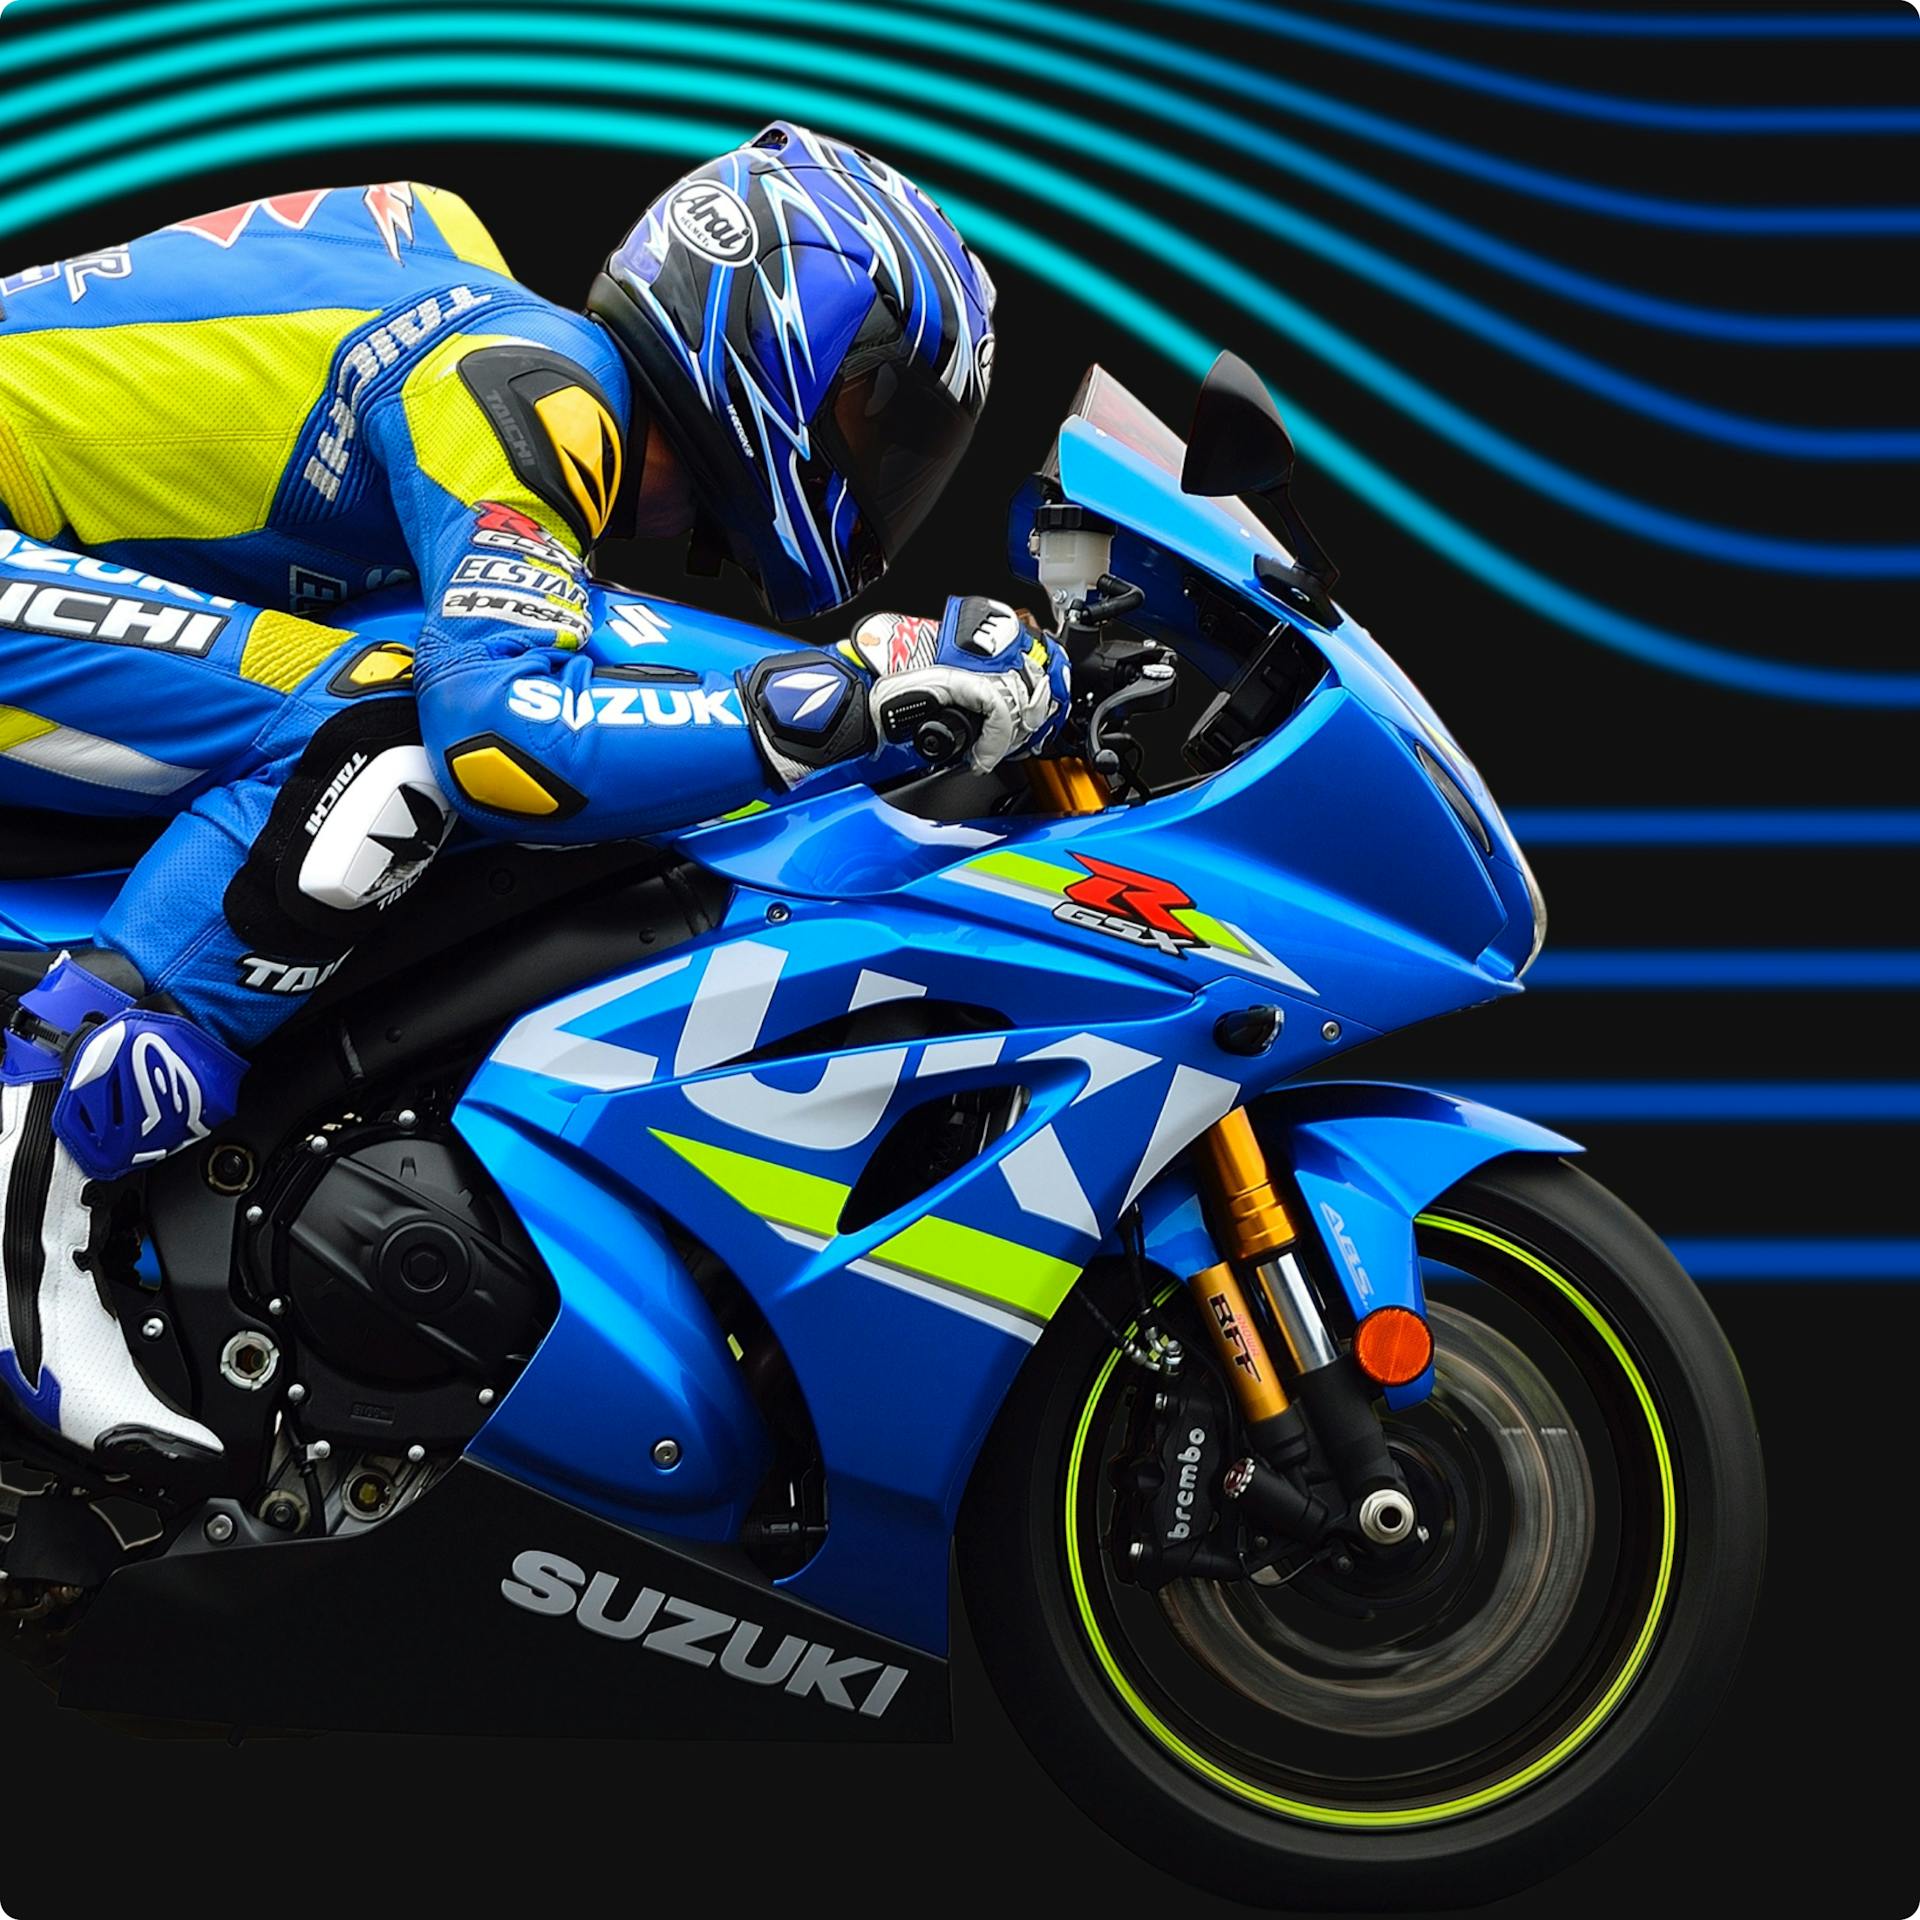 Stylised image of a person in blue Suzuki biker gear riding a Suzuki bike at speed